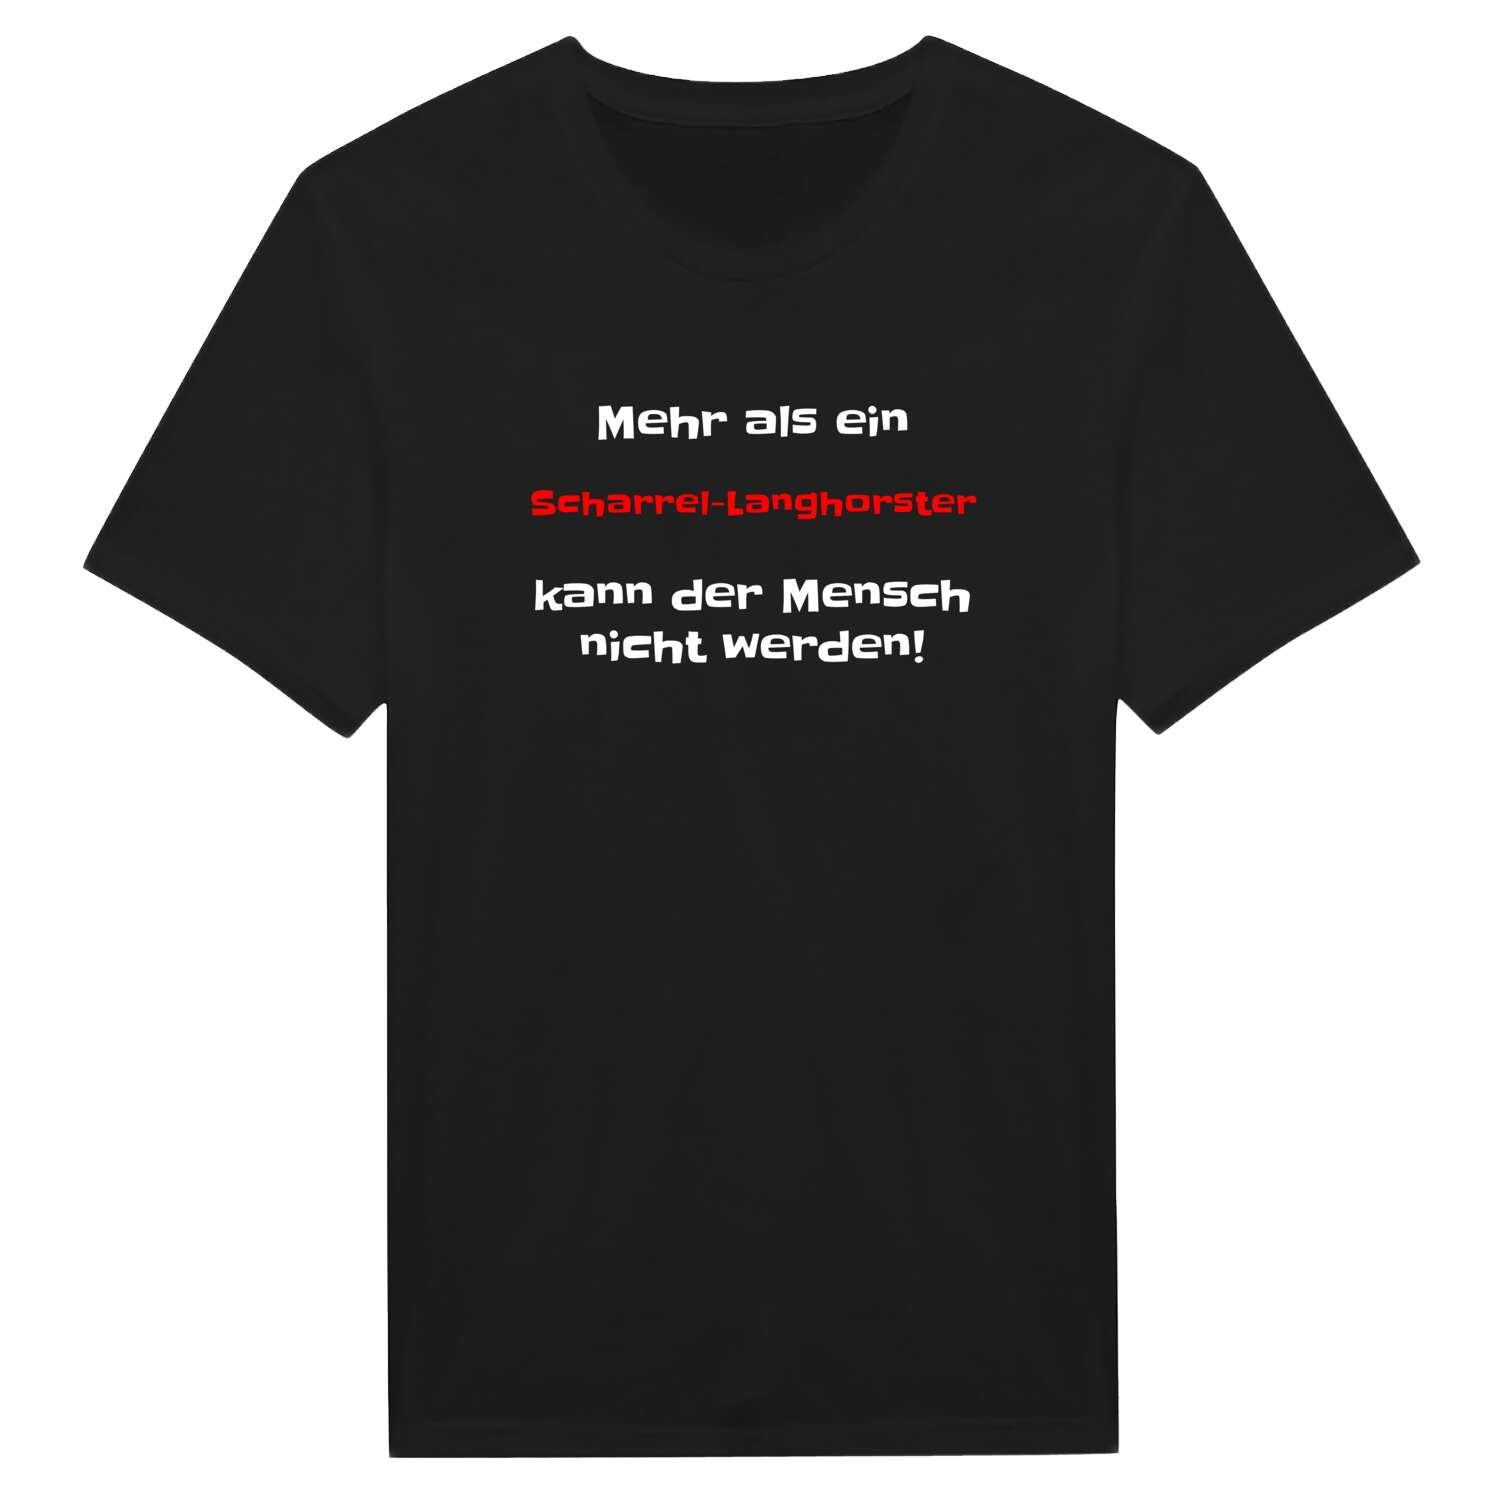 Scharrel-Langhorst T-Shirt »Mehr als ein«